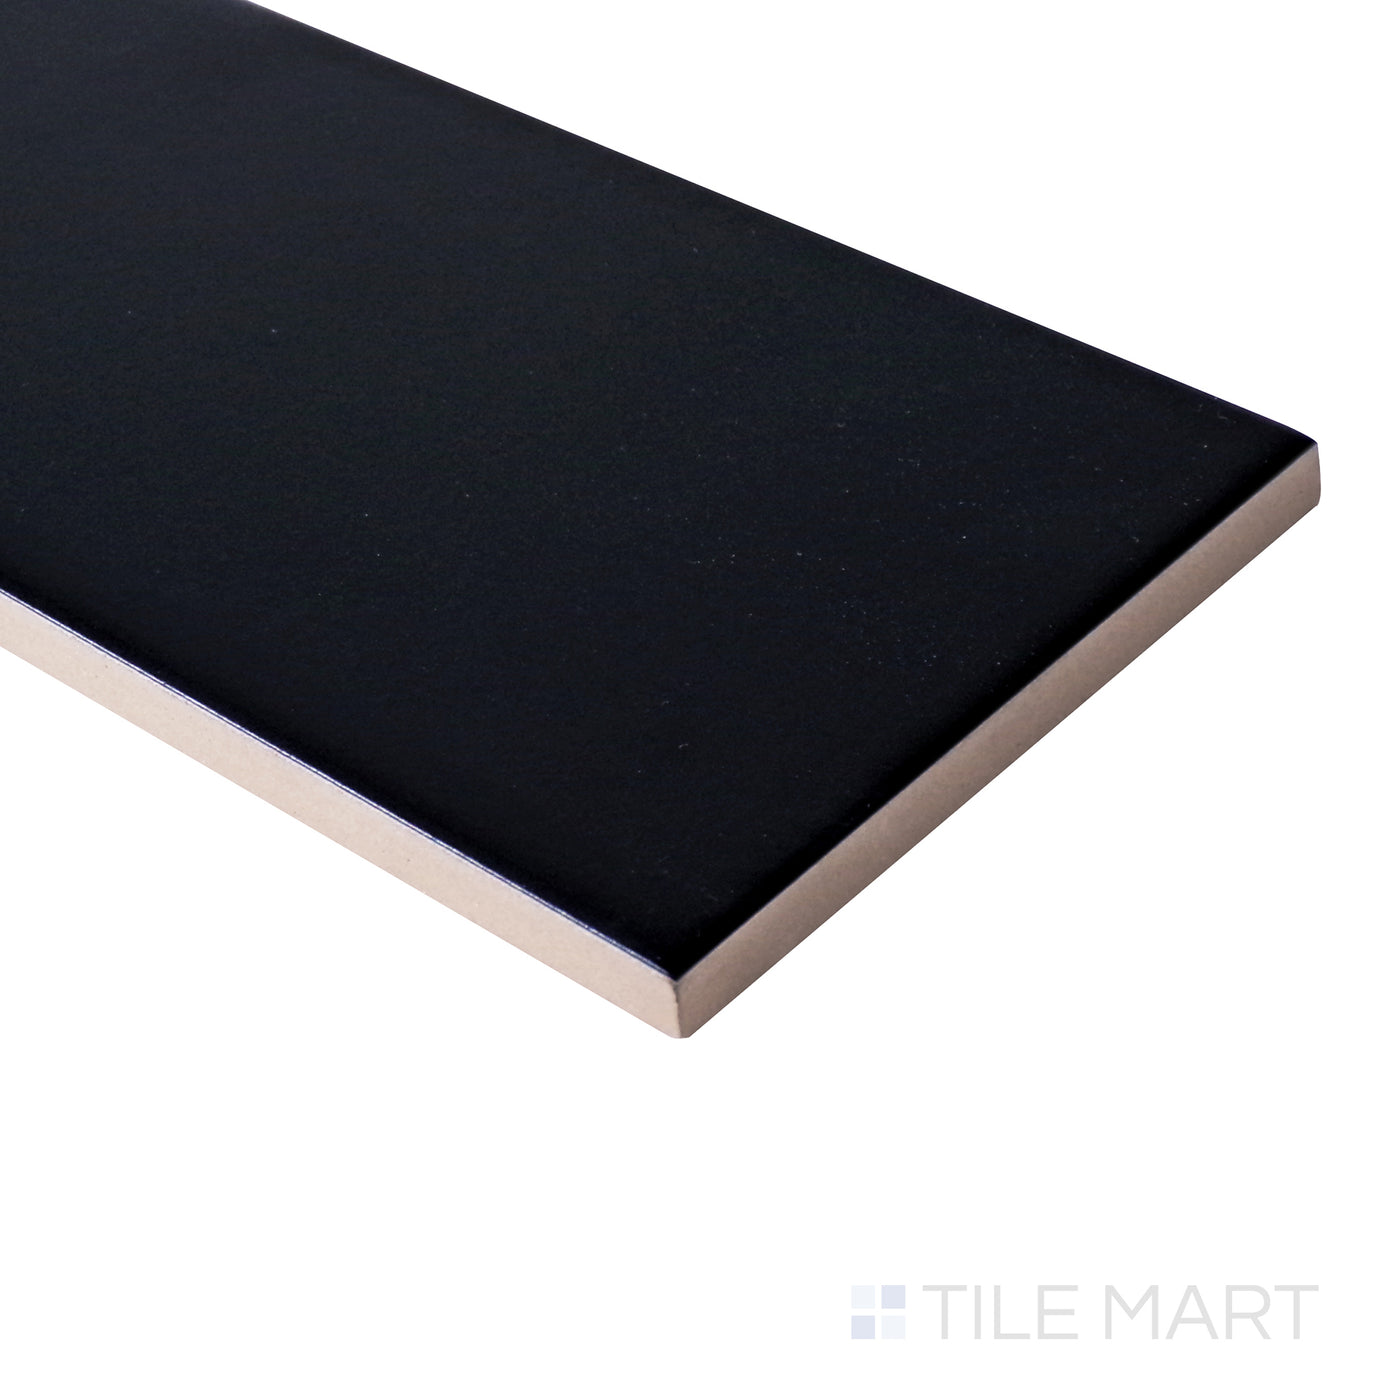 Basics Ceramic Field Tile 3X12 Black Matte